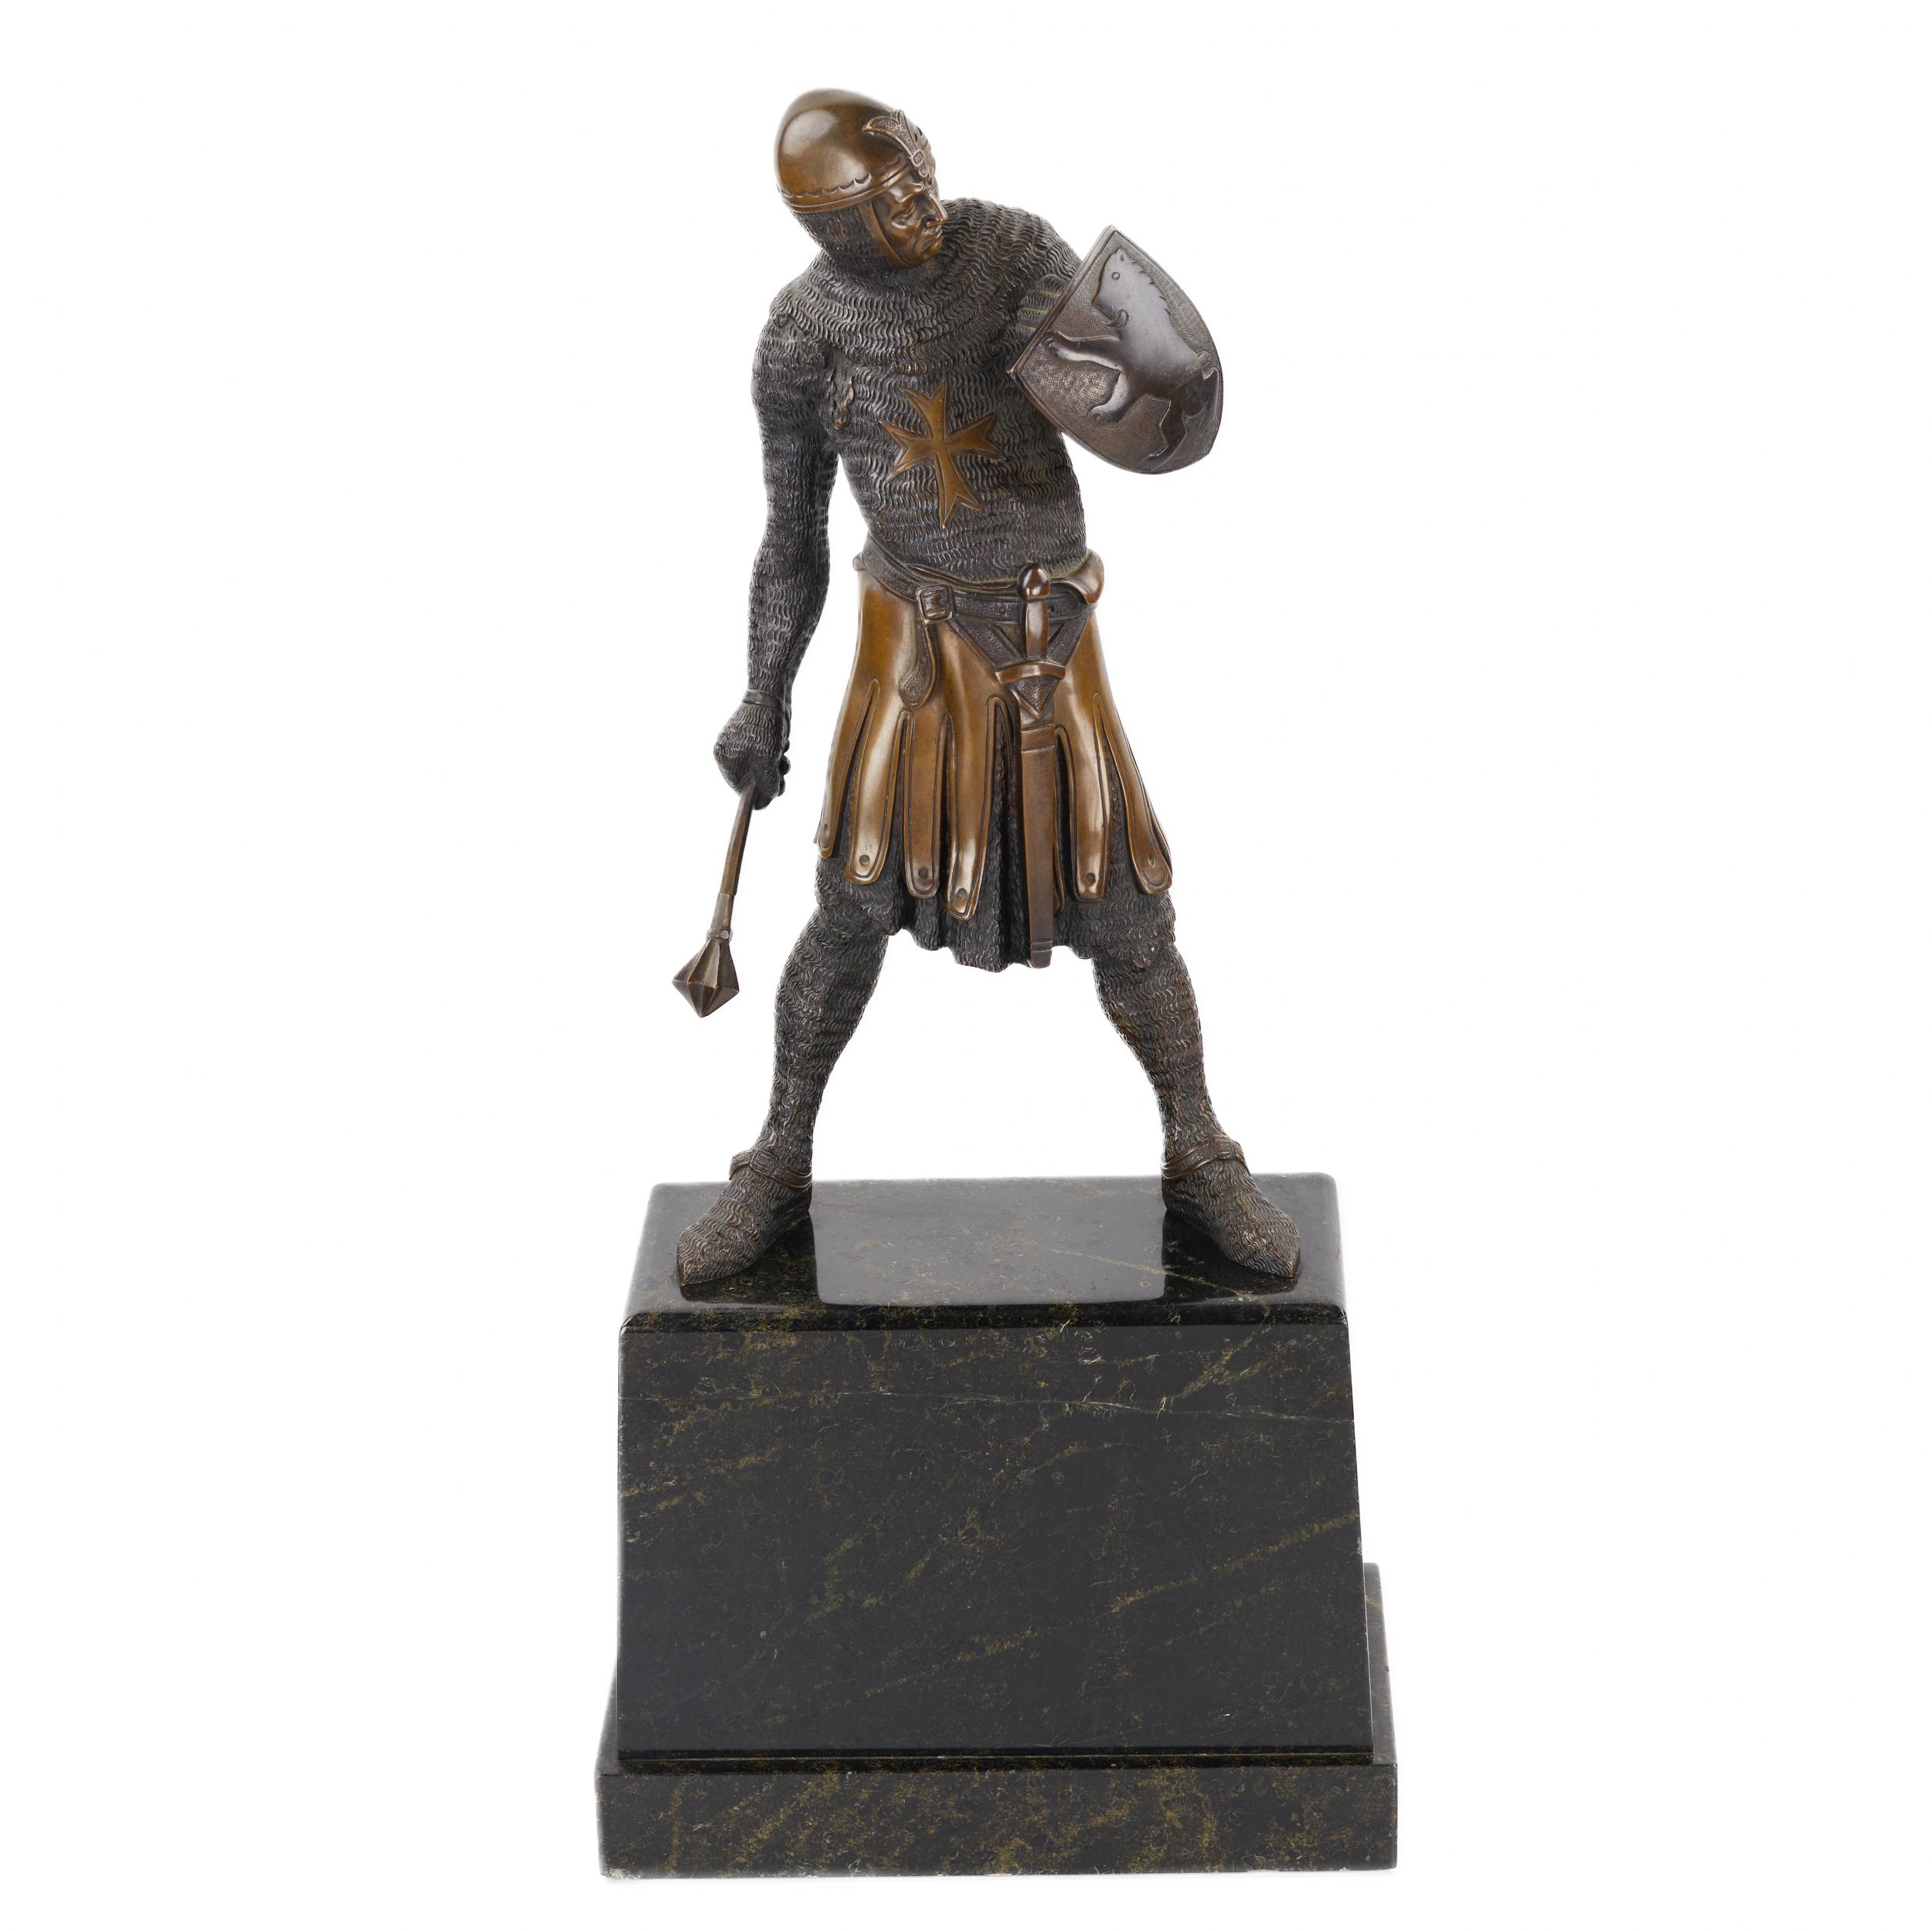 Sculpture-en-bronze-du-chevalier-de-Malte-Tournant-des-19e-et-20e-siècles-